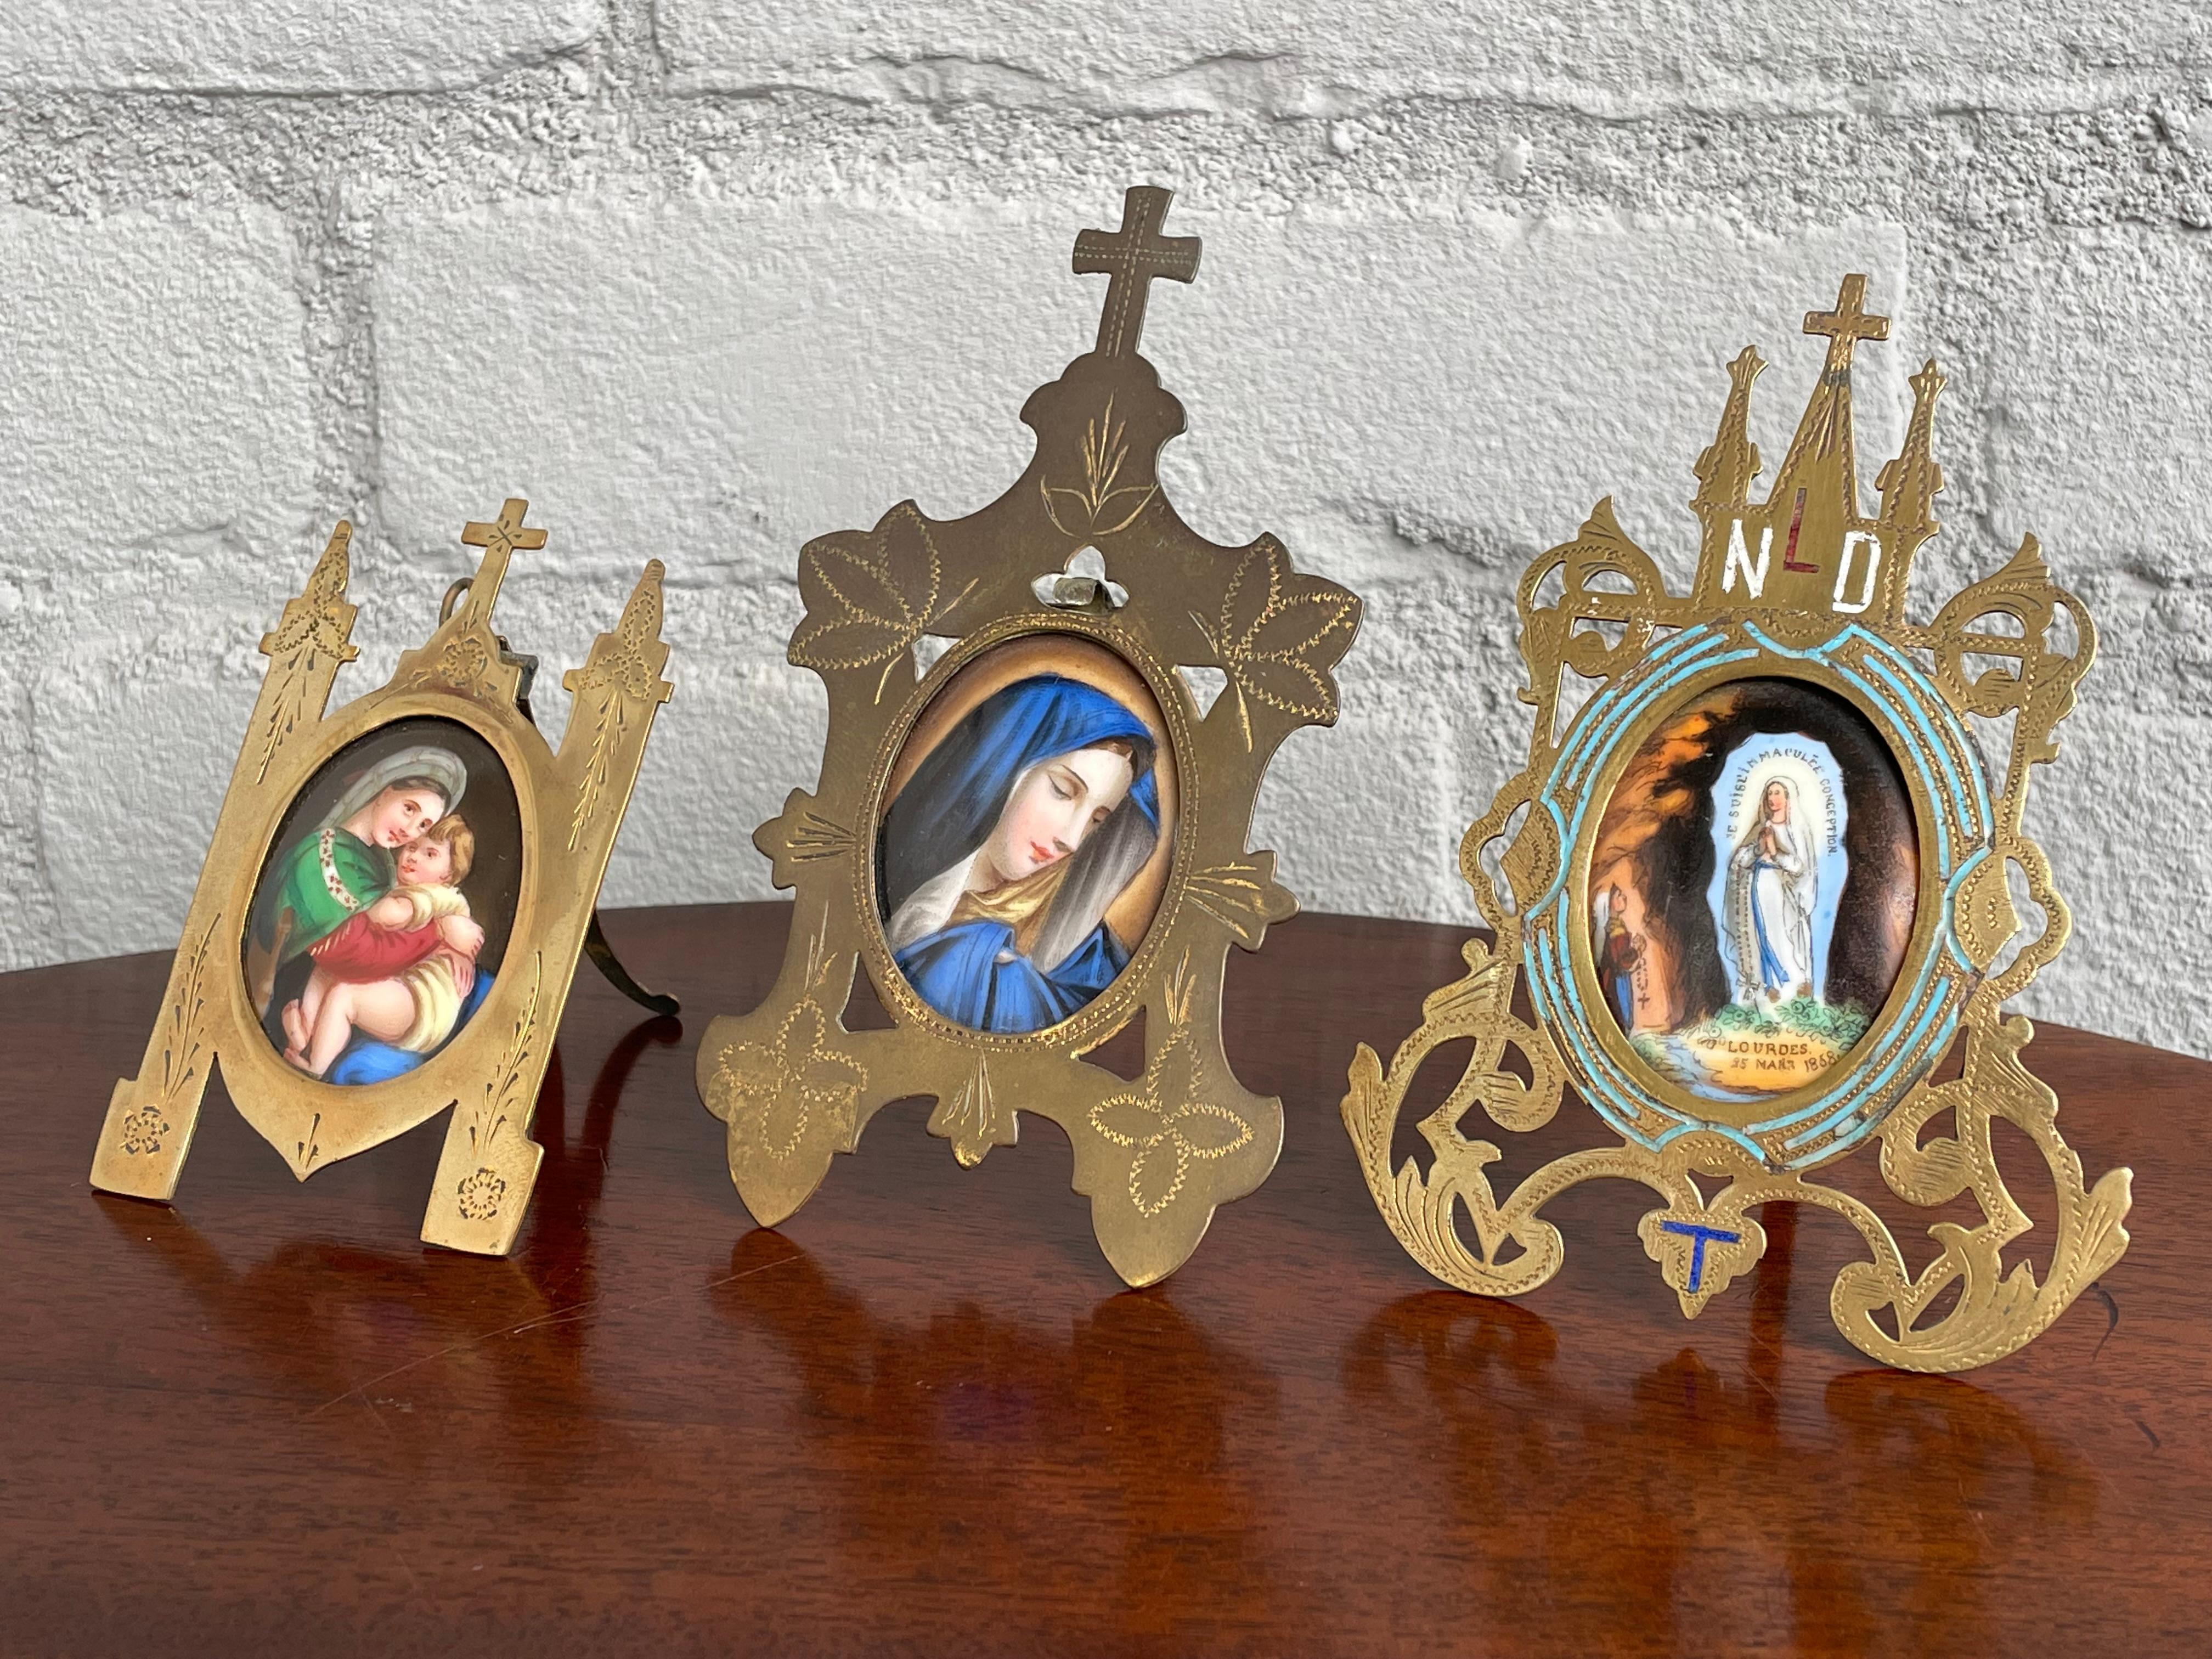 Wunderschönes handgemaltes Set von 4 Maria- und Jesusbildern auf Porzellanplaketten.

Wenn Sie den Rest Ihrer Woche damit verbringen würden, nach antiken gotischen Fotorahmen zu suchen, hätten Sie großes Glück, wenn Sie einen fänden. Wir hatten